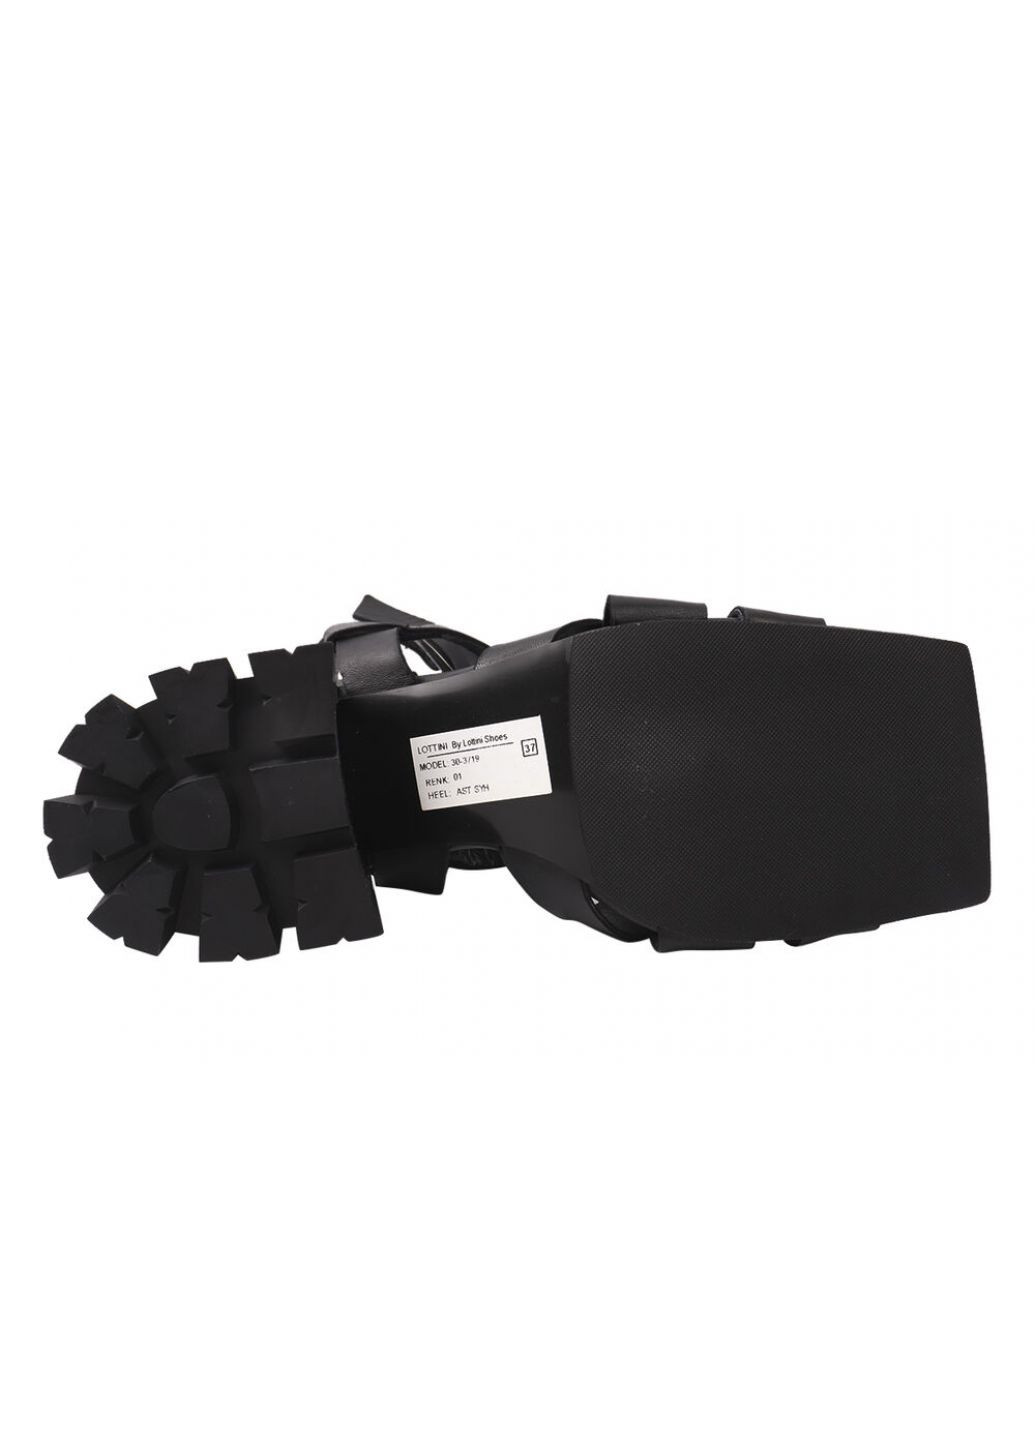 Черные босоножки женские из натуральной кожи, на каблуке, с открытой пятой, цвет черный, Lottini